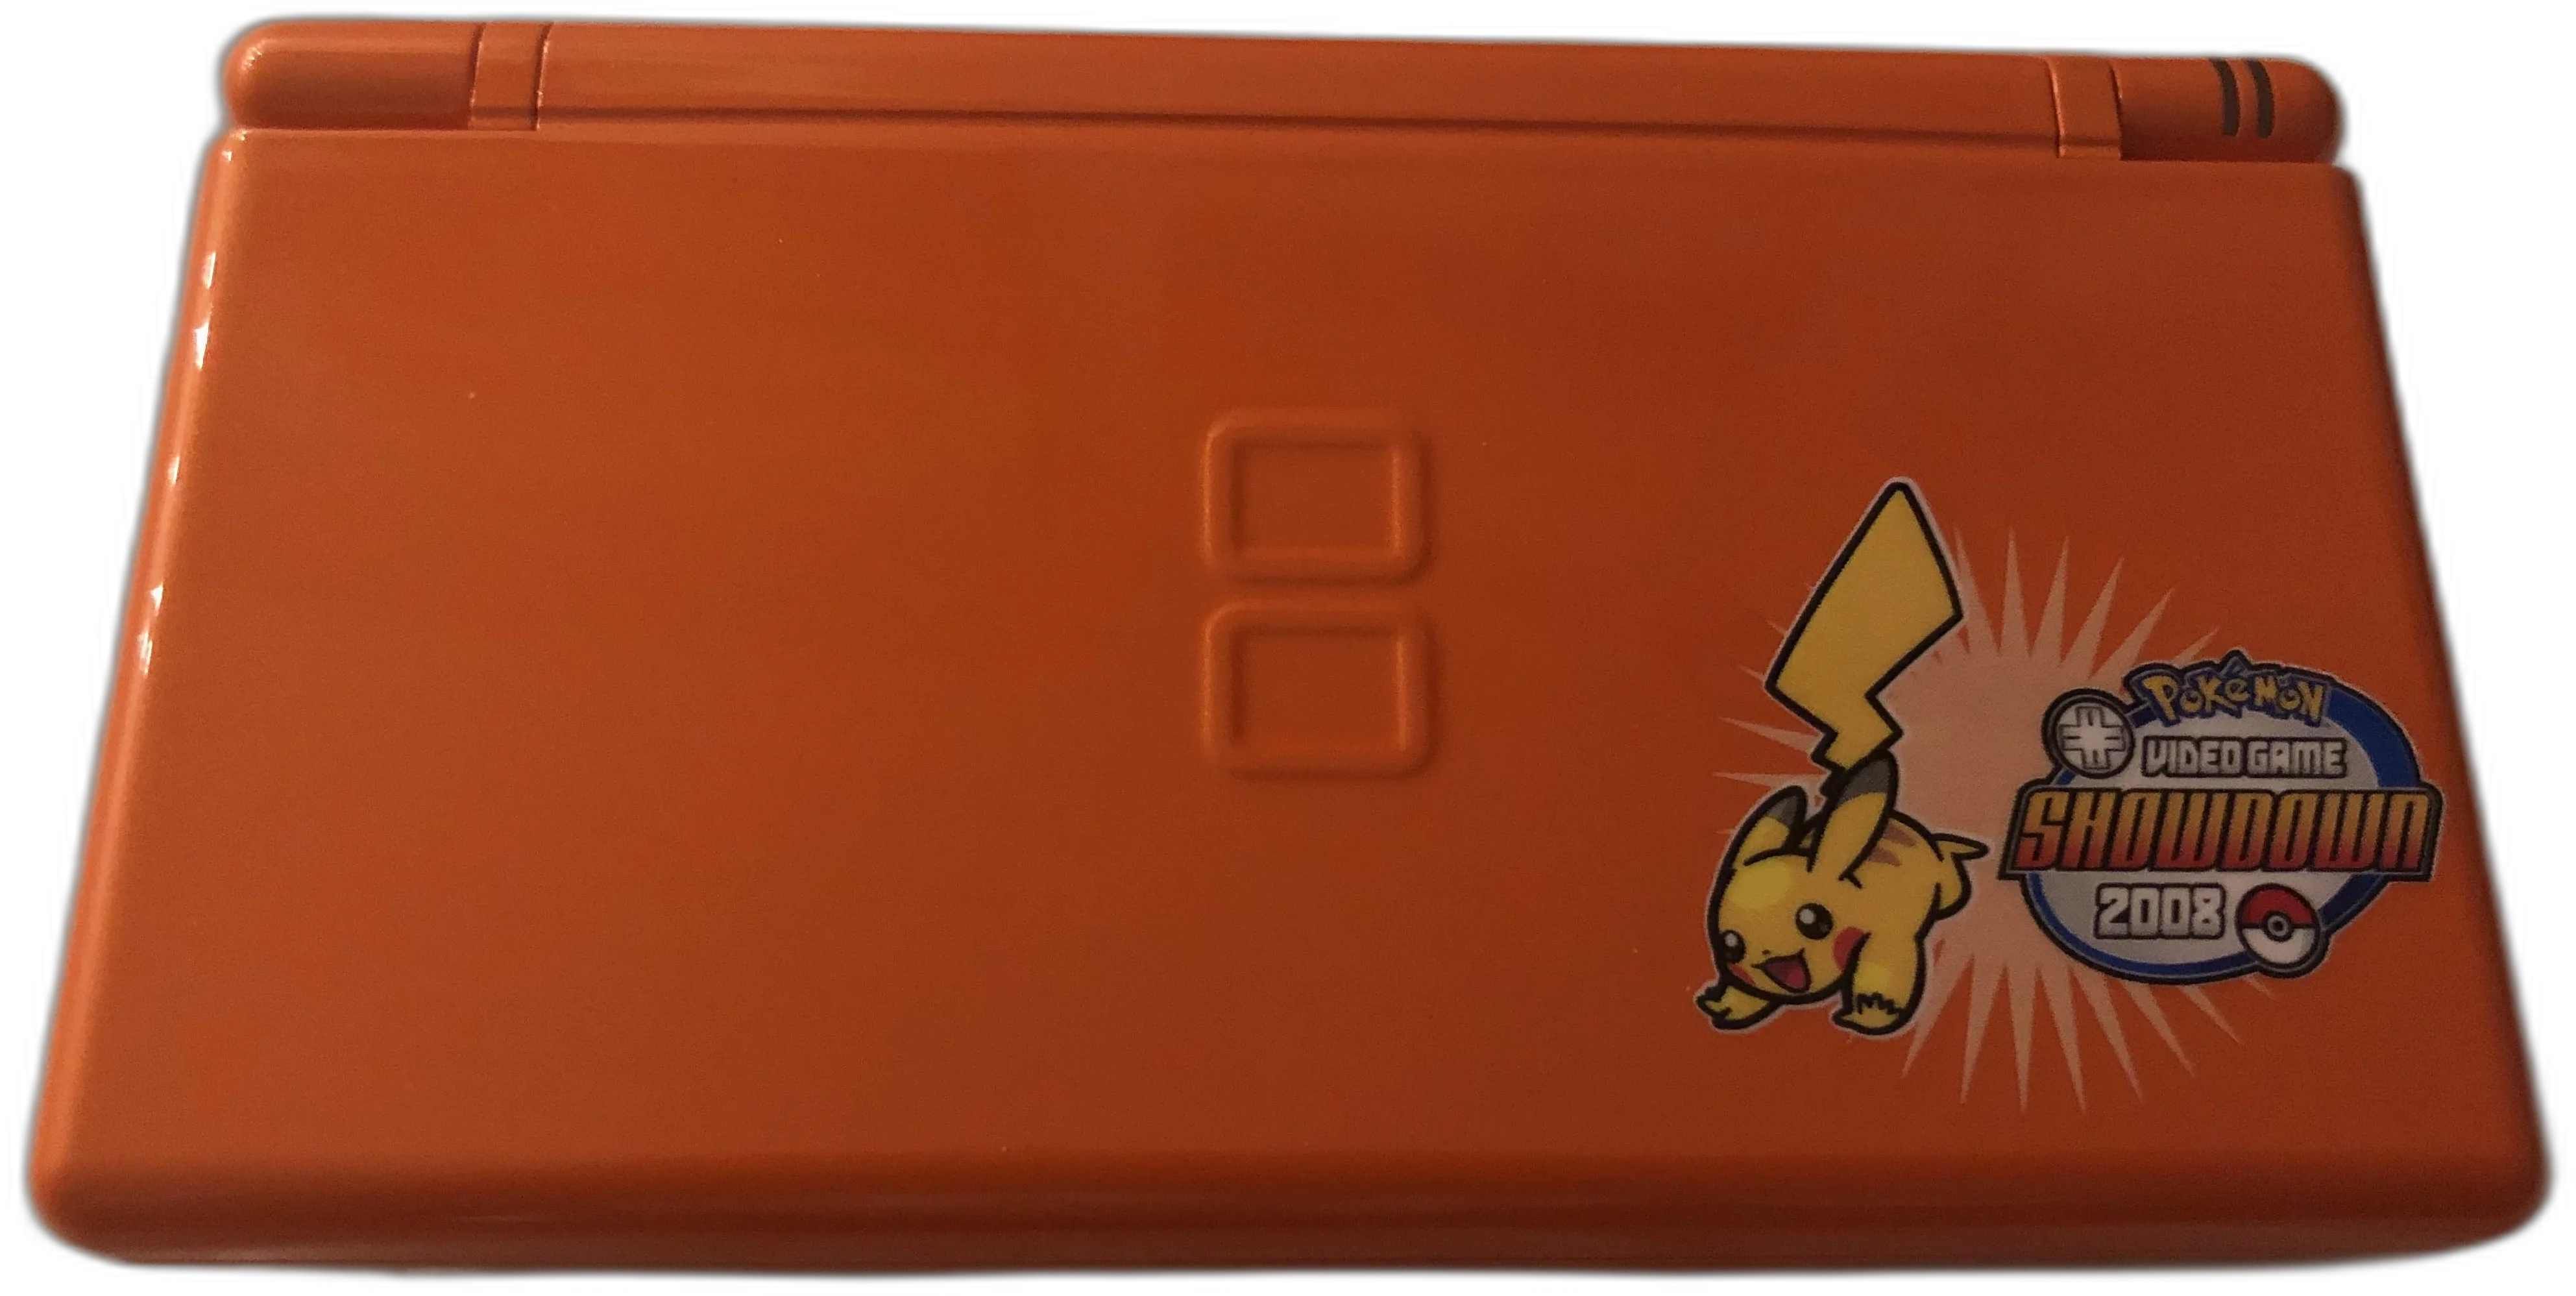  Nintendo DS Lite Pokemon Video Game Showdown 2008 Console